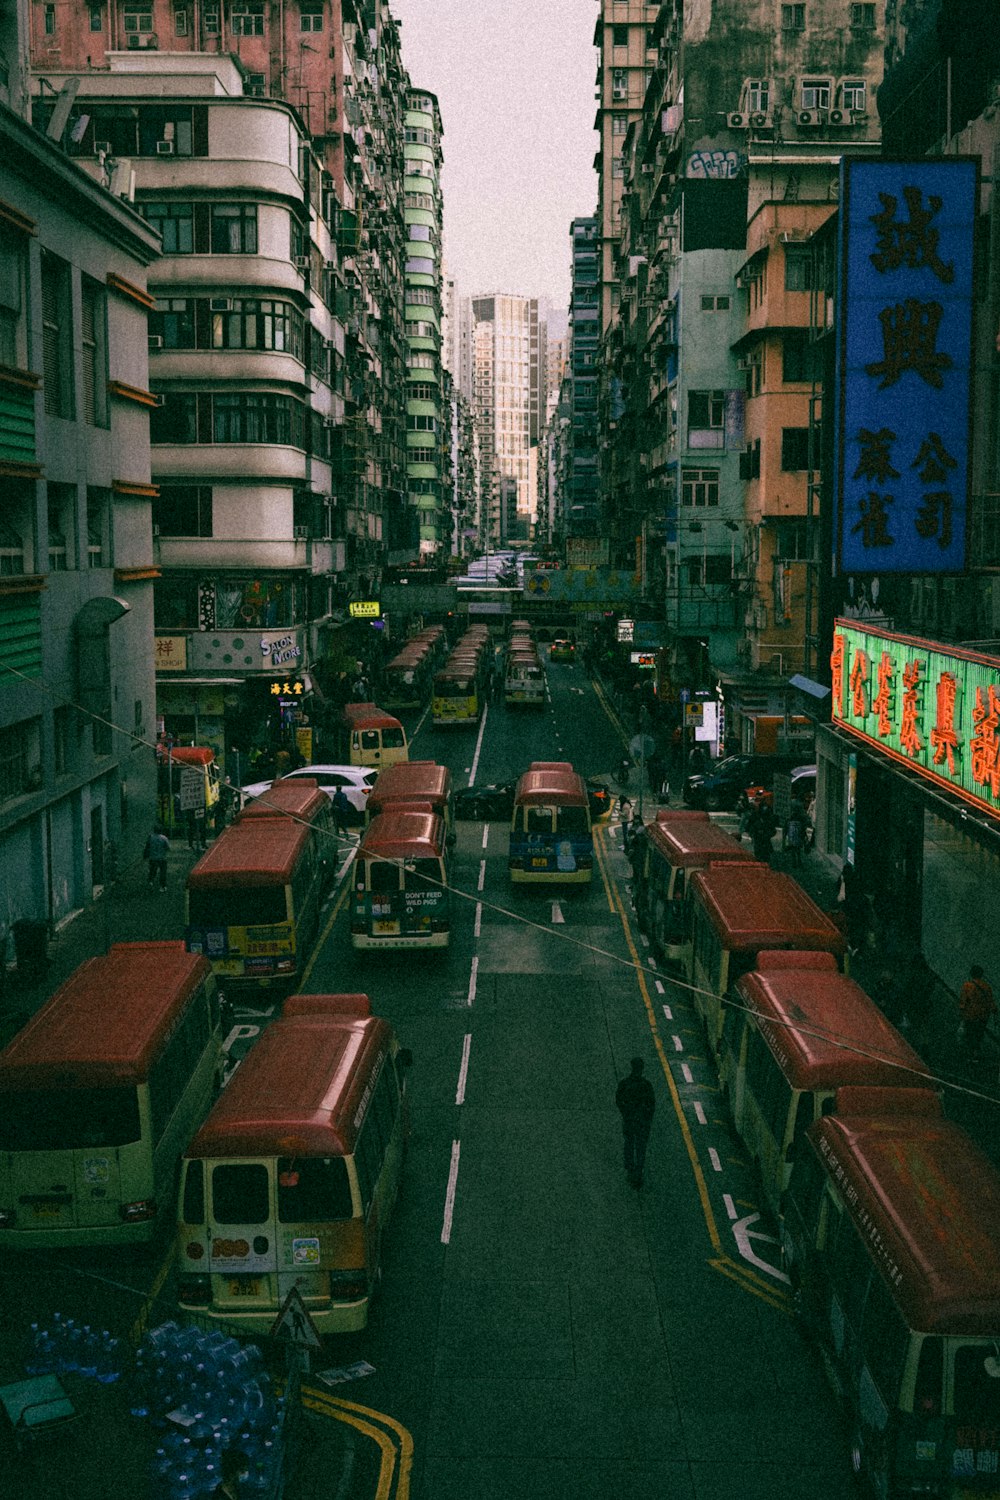 Una calle de la ciudad llena de muchos autobuses